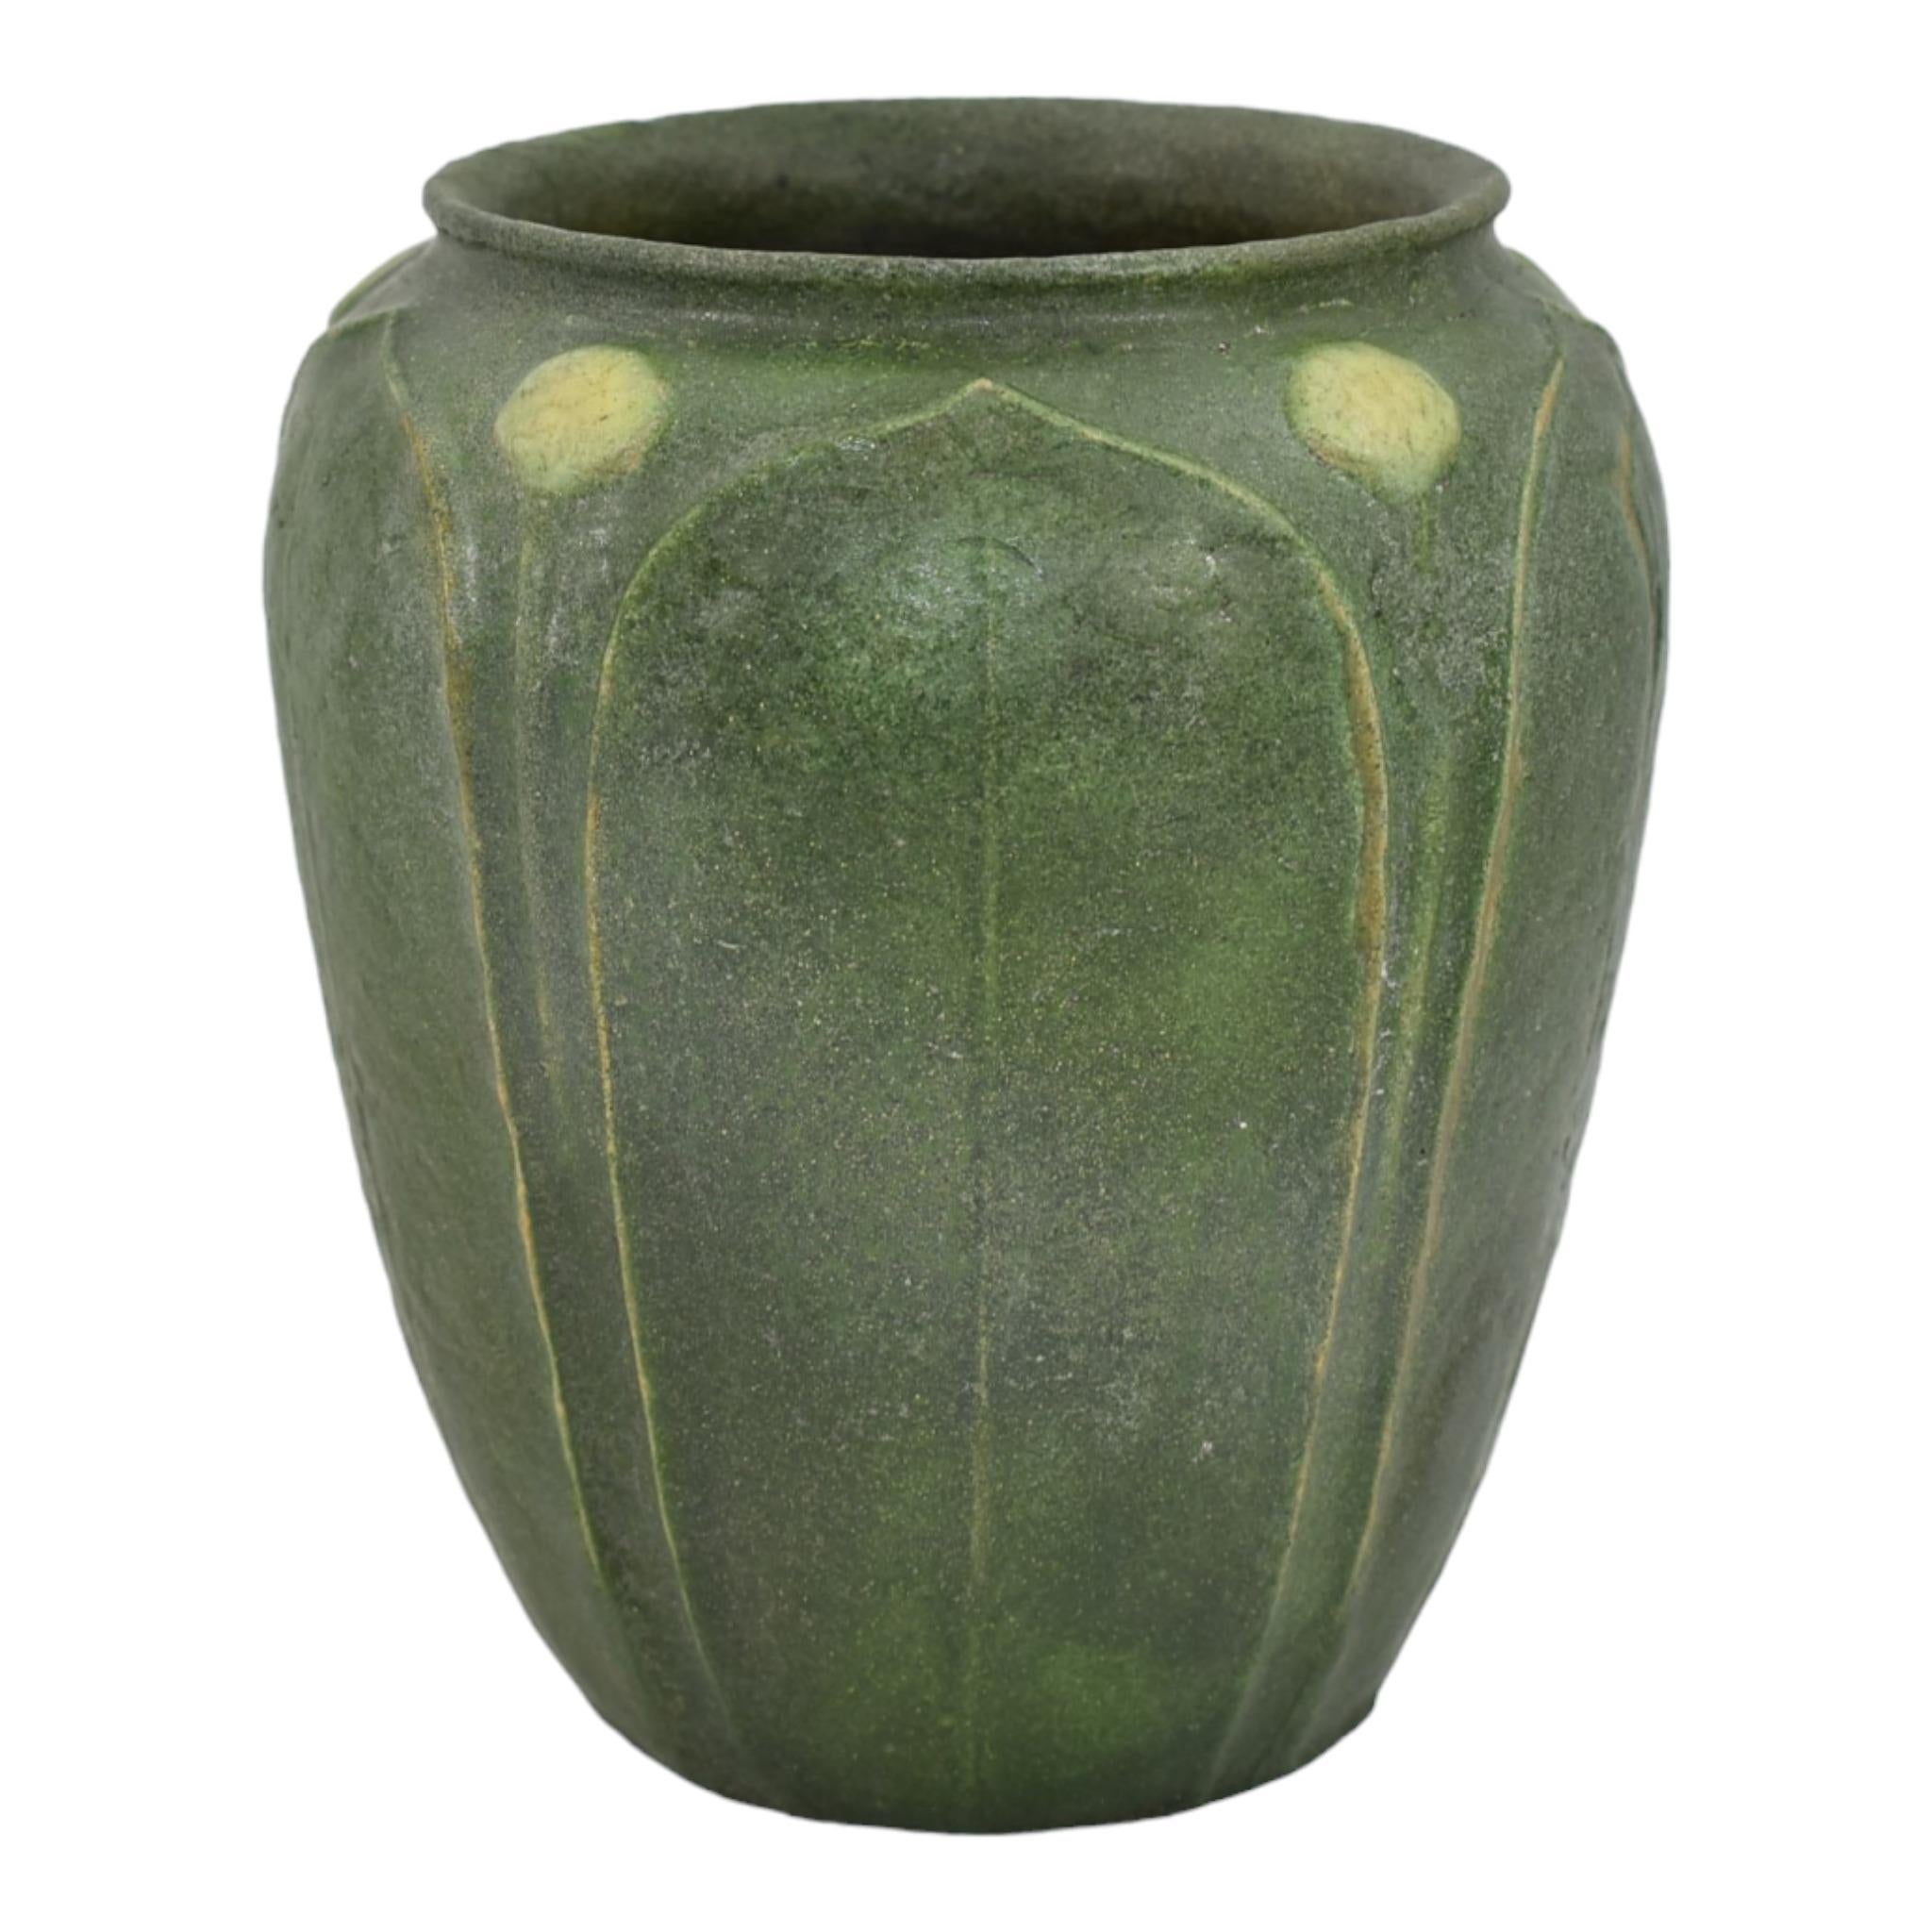 Vase bicolore Grueby 1918 Arts and Crafts Pottery Matte Green Yellow Buds
Merveilleuse glaçure organique verte mate avec de larges feuilles et des bourgeons jaunes travaillés à la main.
La carrosserie a été réparée par un professionnel. Pas d'autres